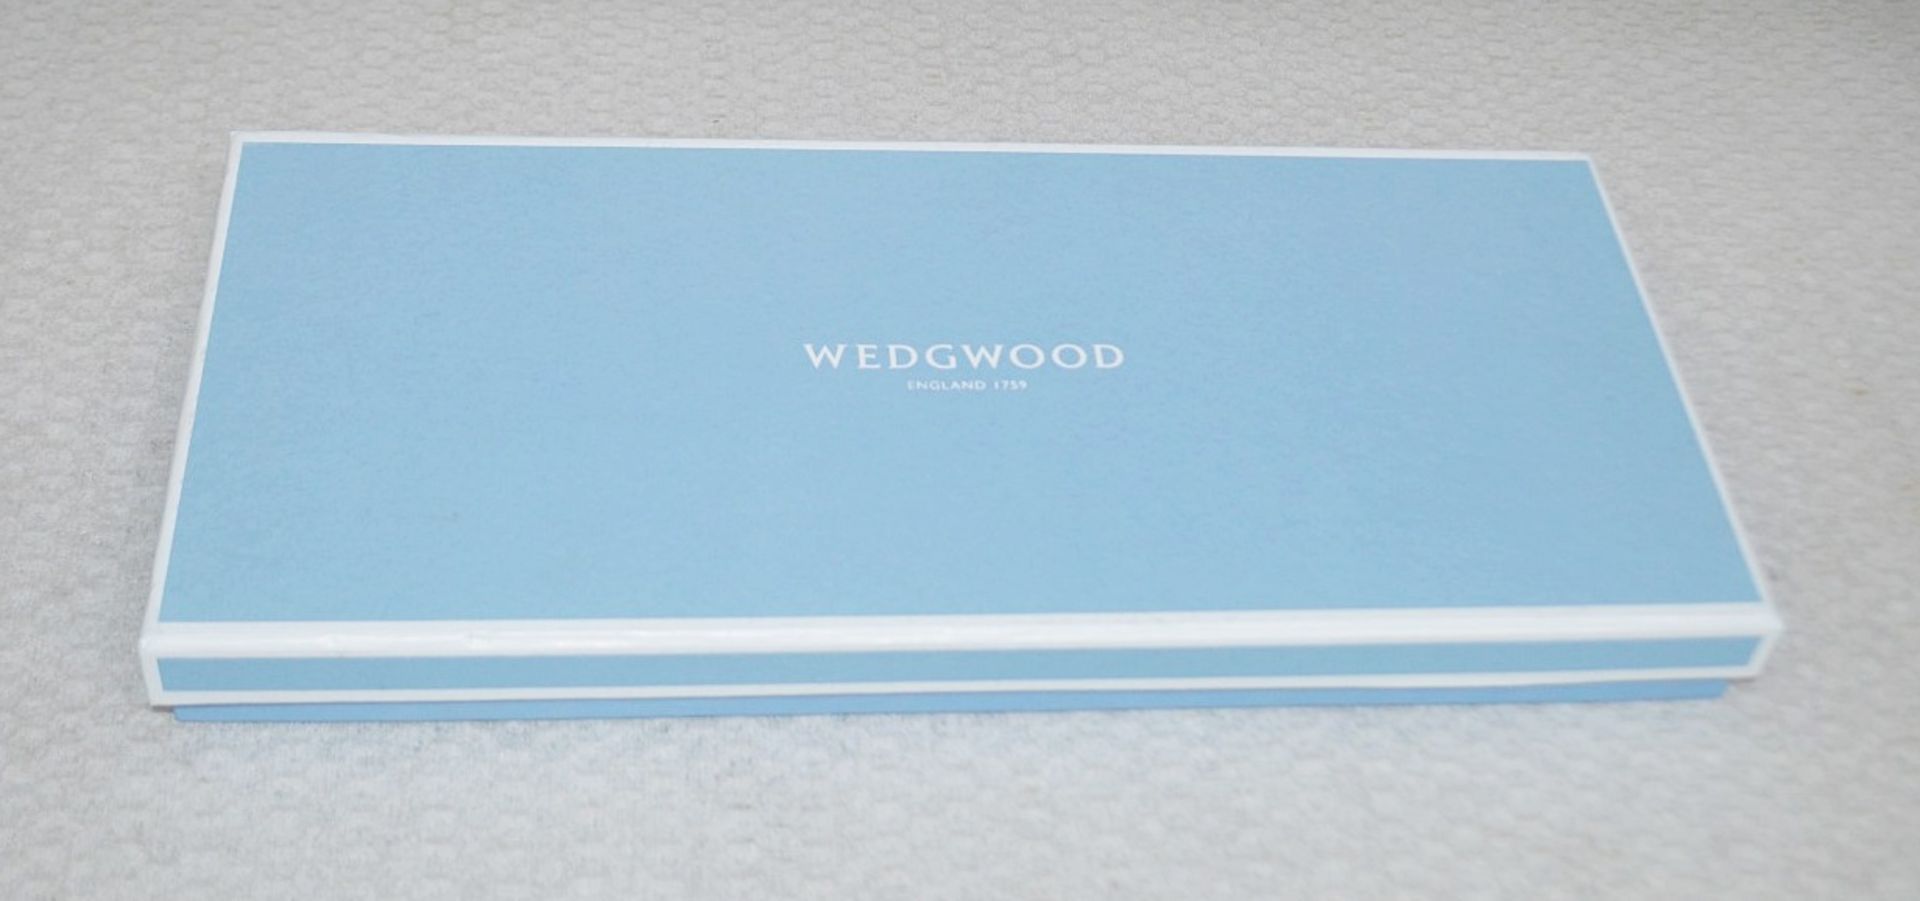 1 x WEDGWOOD 'Wonderlust Blue Pagoda' Sandwich Tray - Dimensions: 15.5cm x W34cm approx - Original - Image 6 of 6